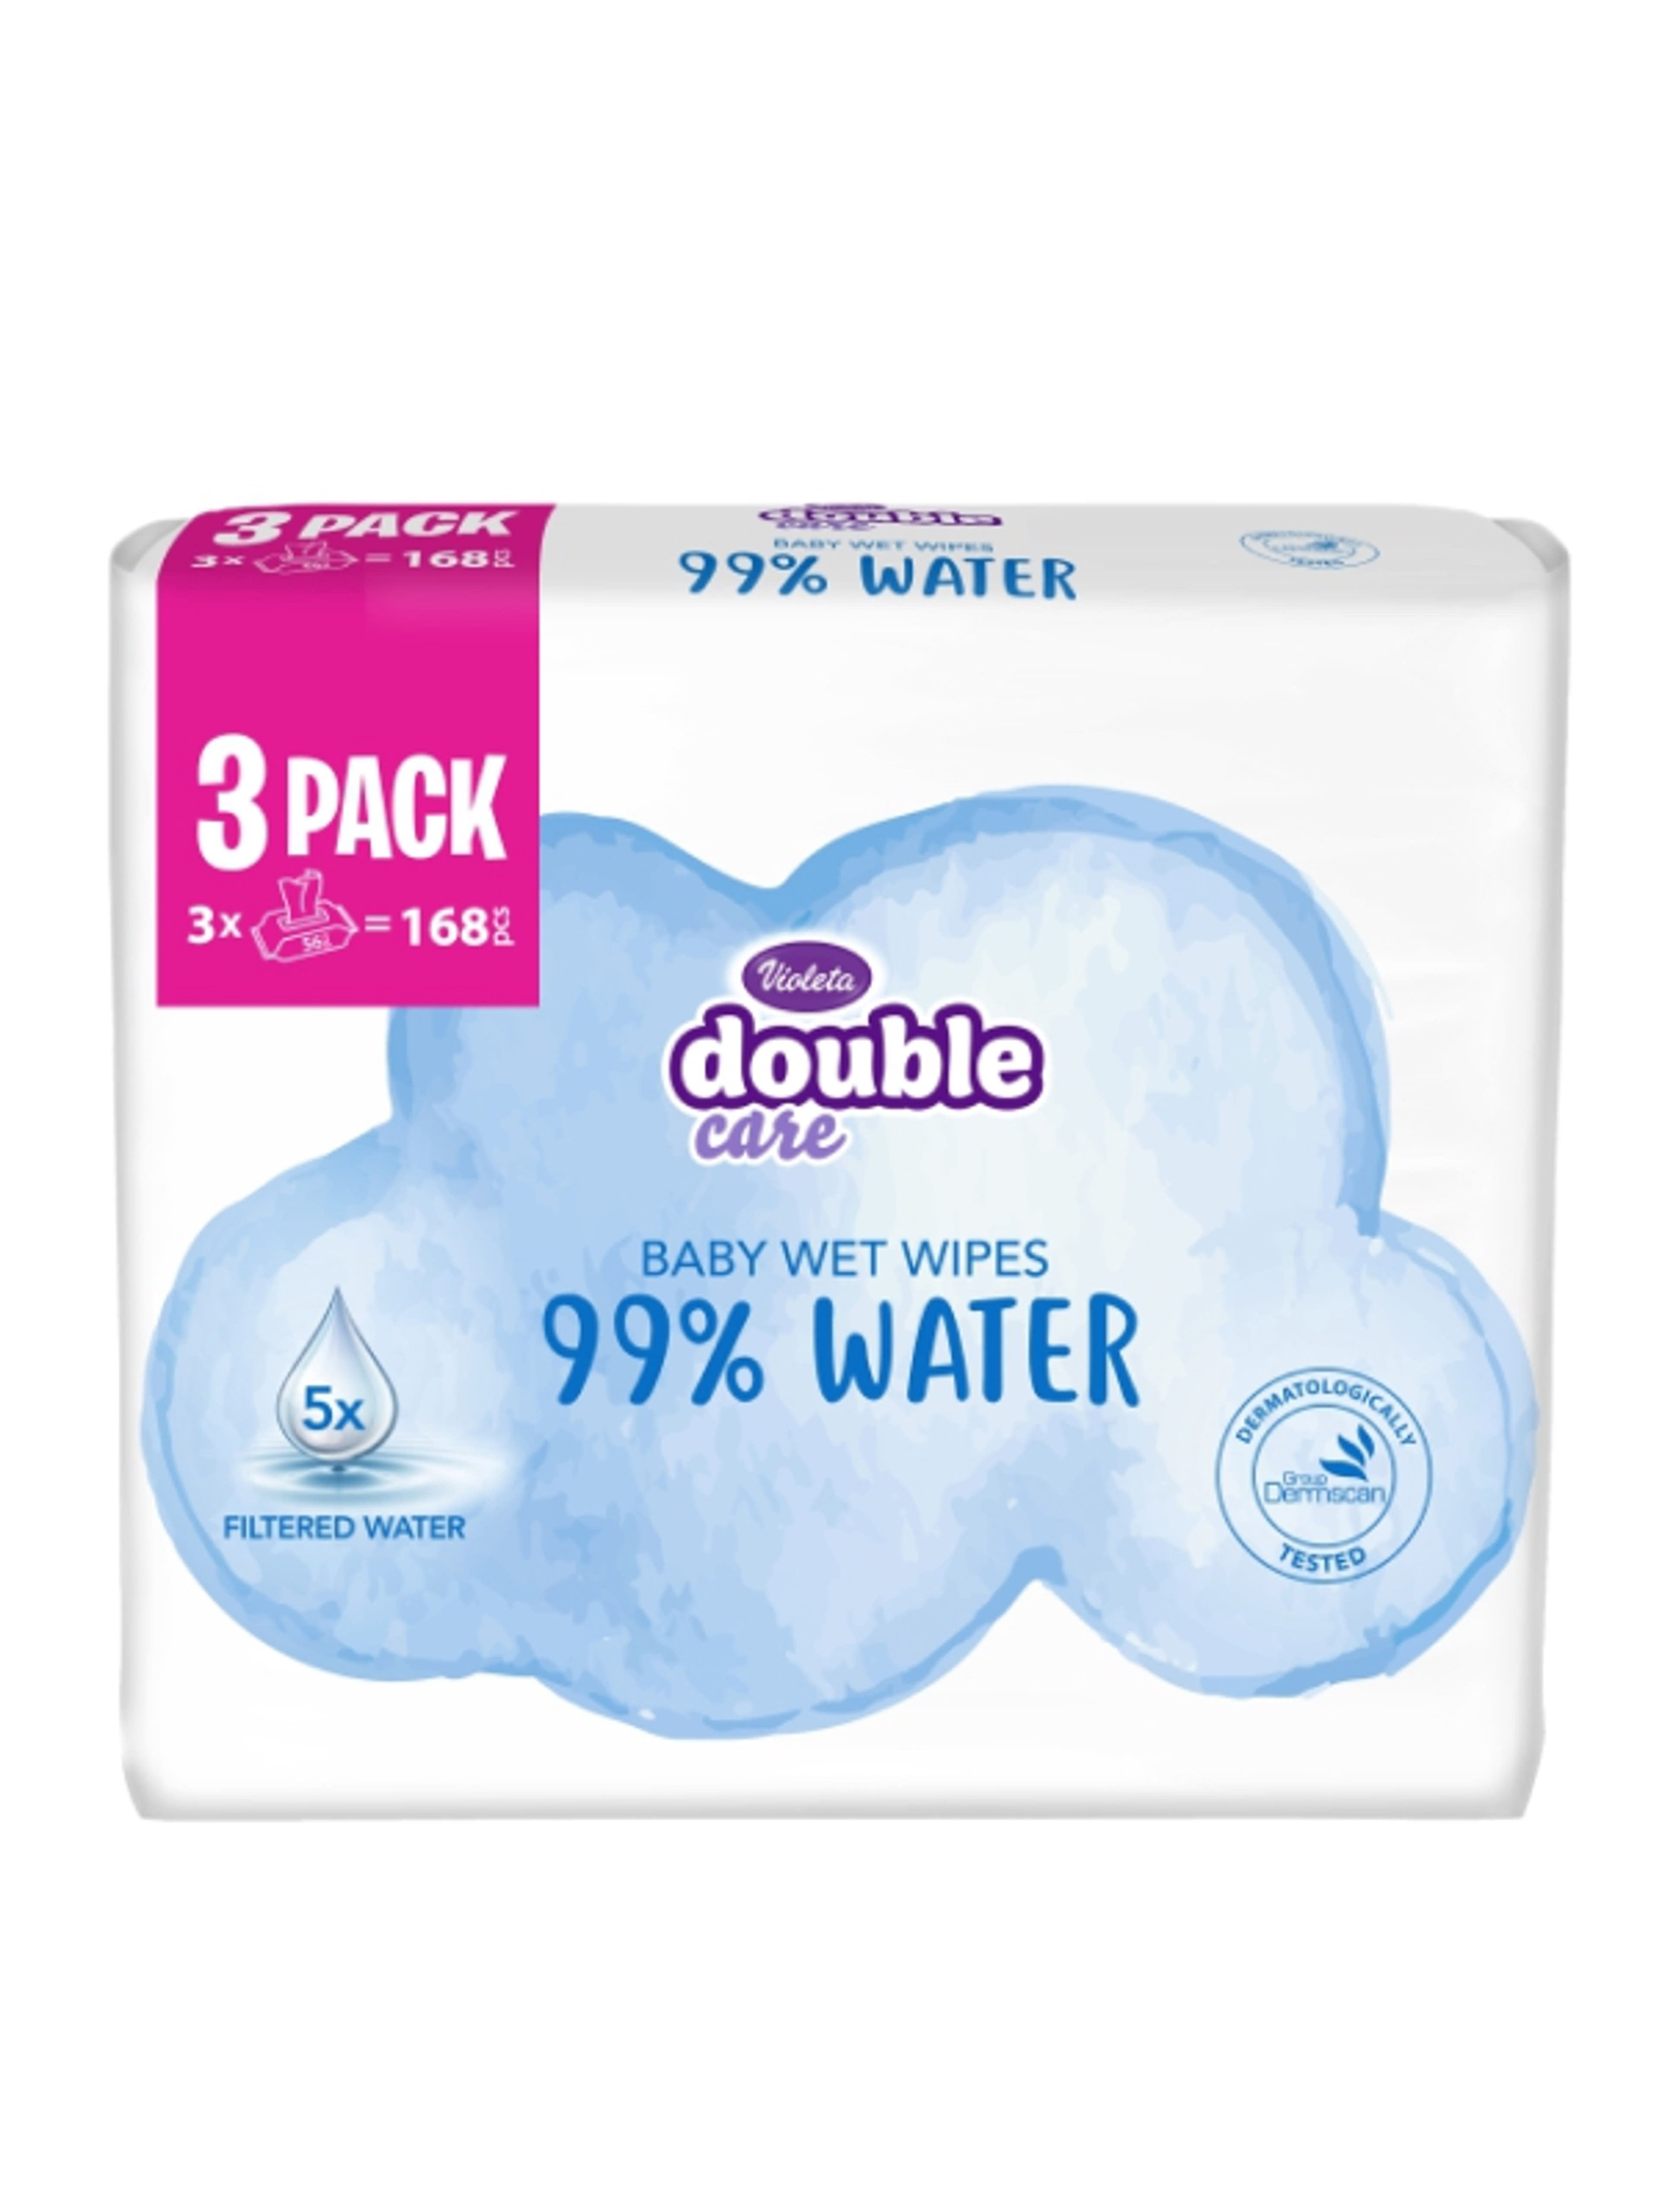 Violeta Double Care popsitörlő 99% vízzel - 168 db